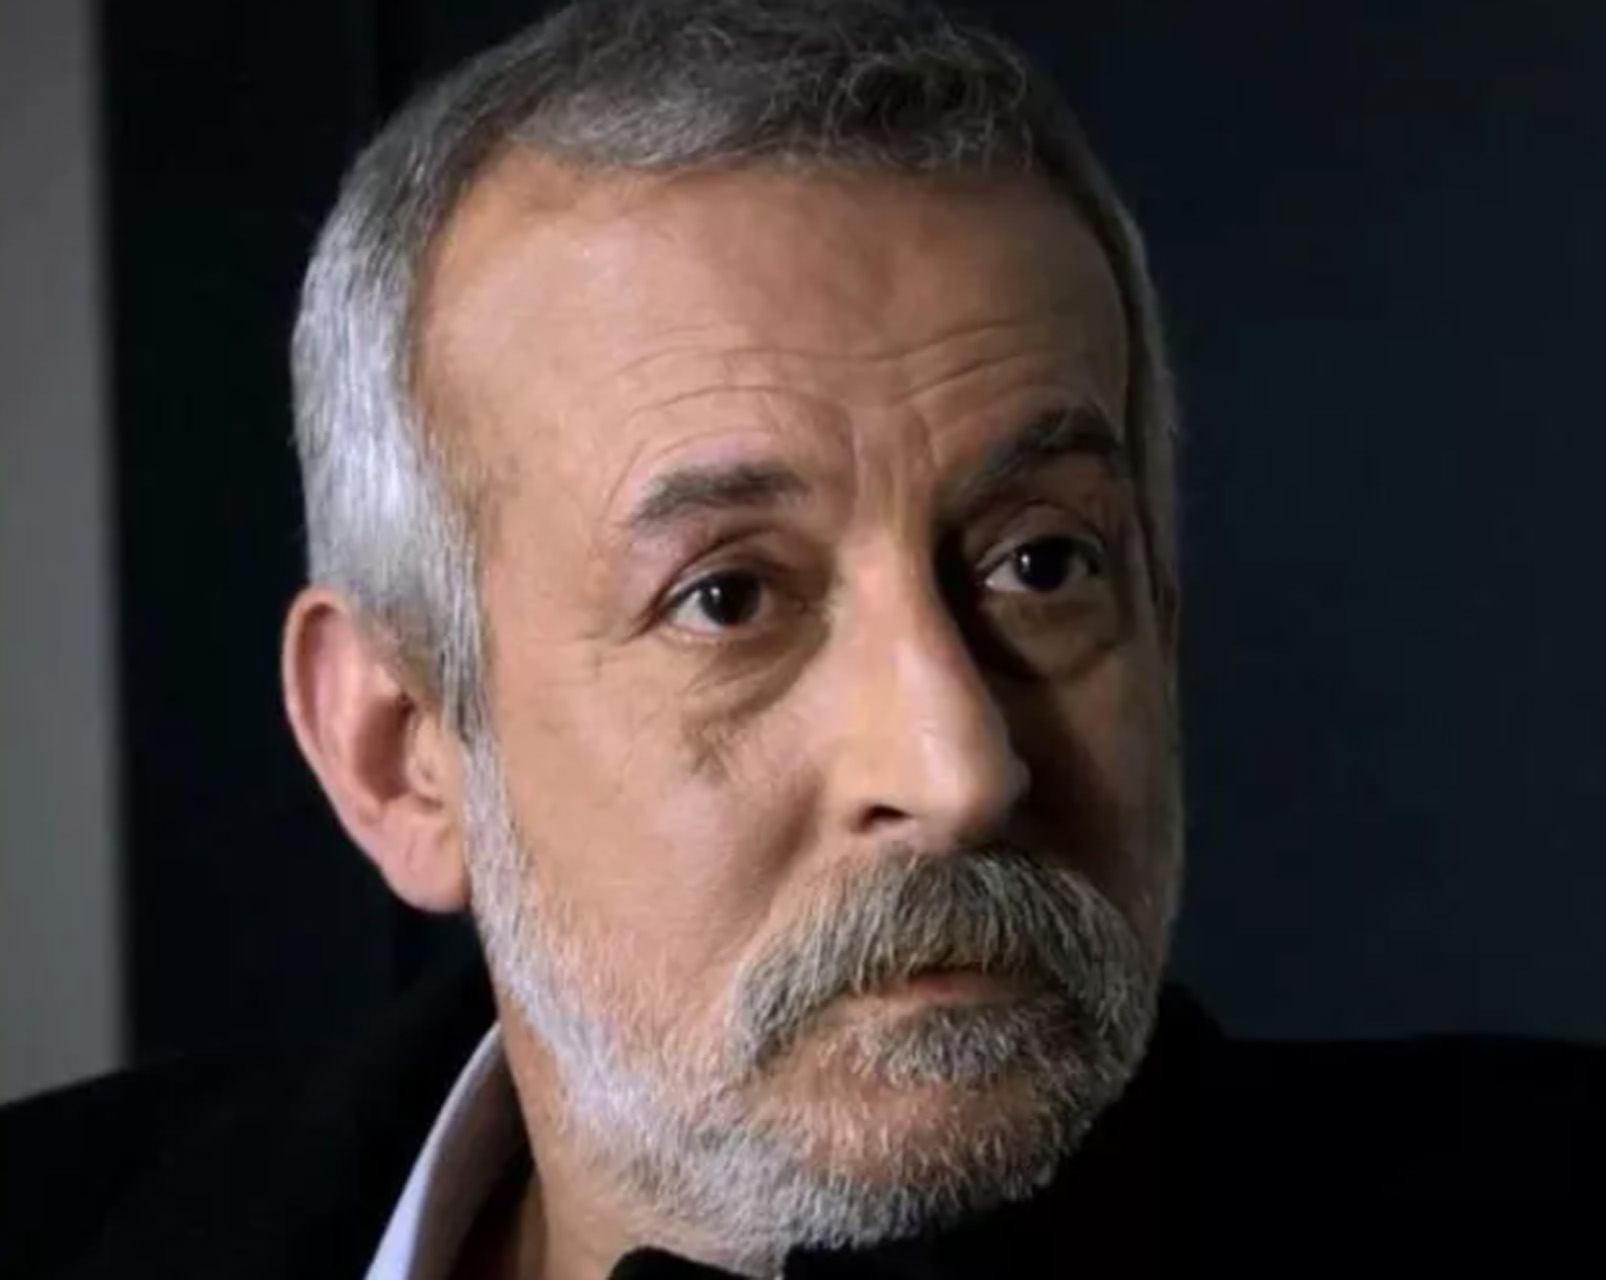 Kurtlar Vadisi oyuncusu İbrahim Gündoğan kimdir? İbrahim Gündoğan öldü mü? Kaç yaşında, neden öldü?